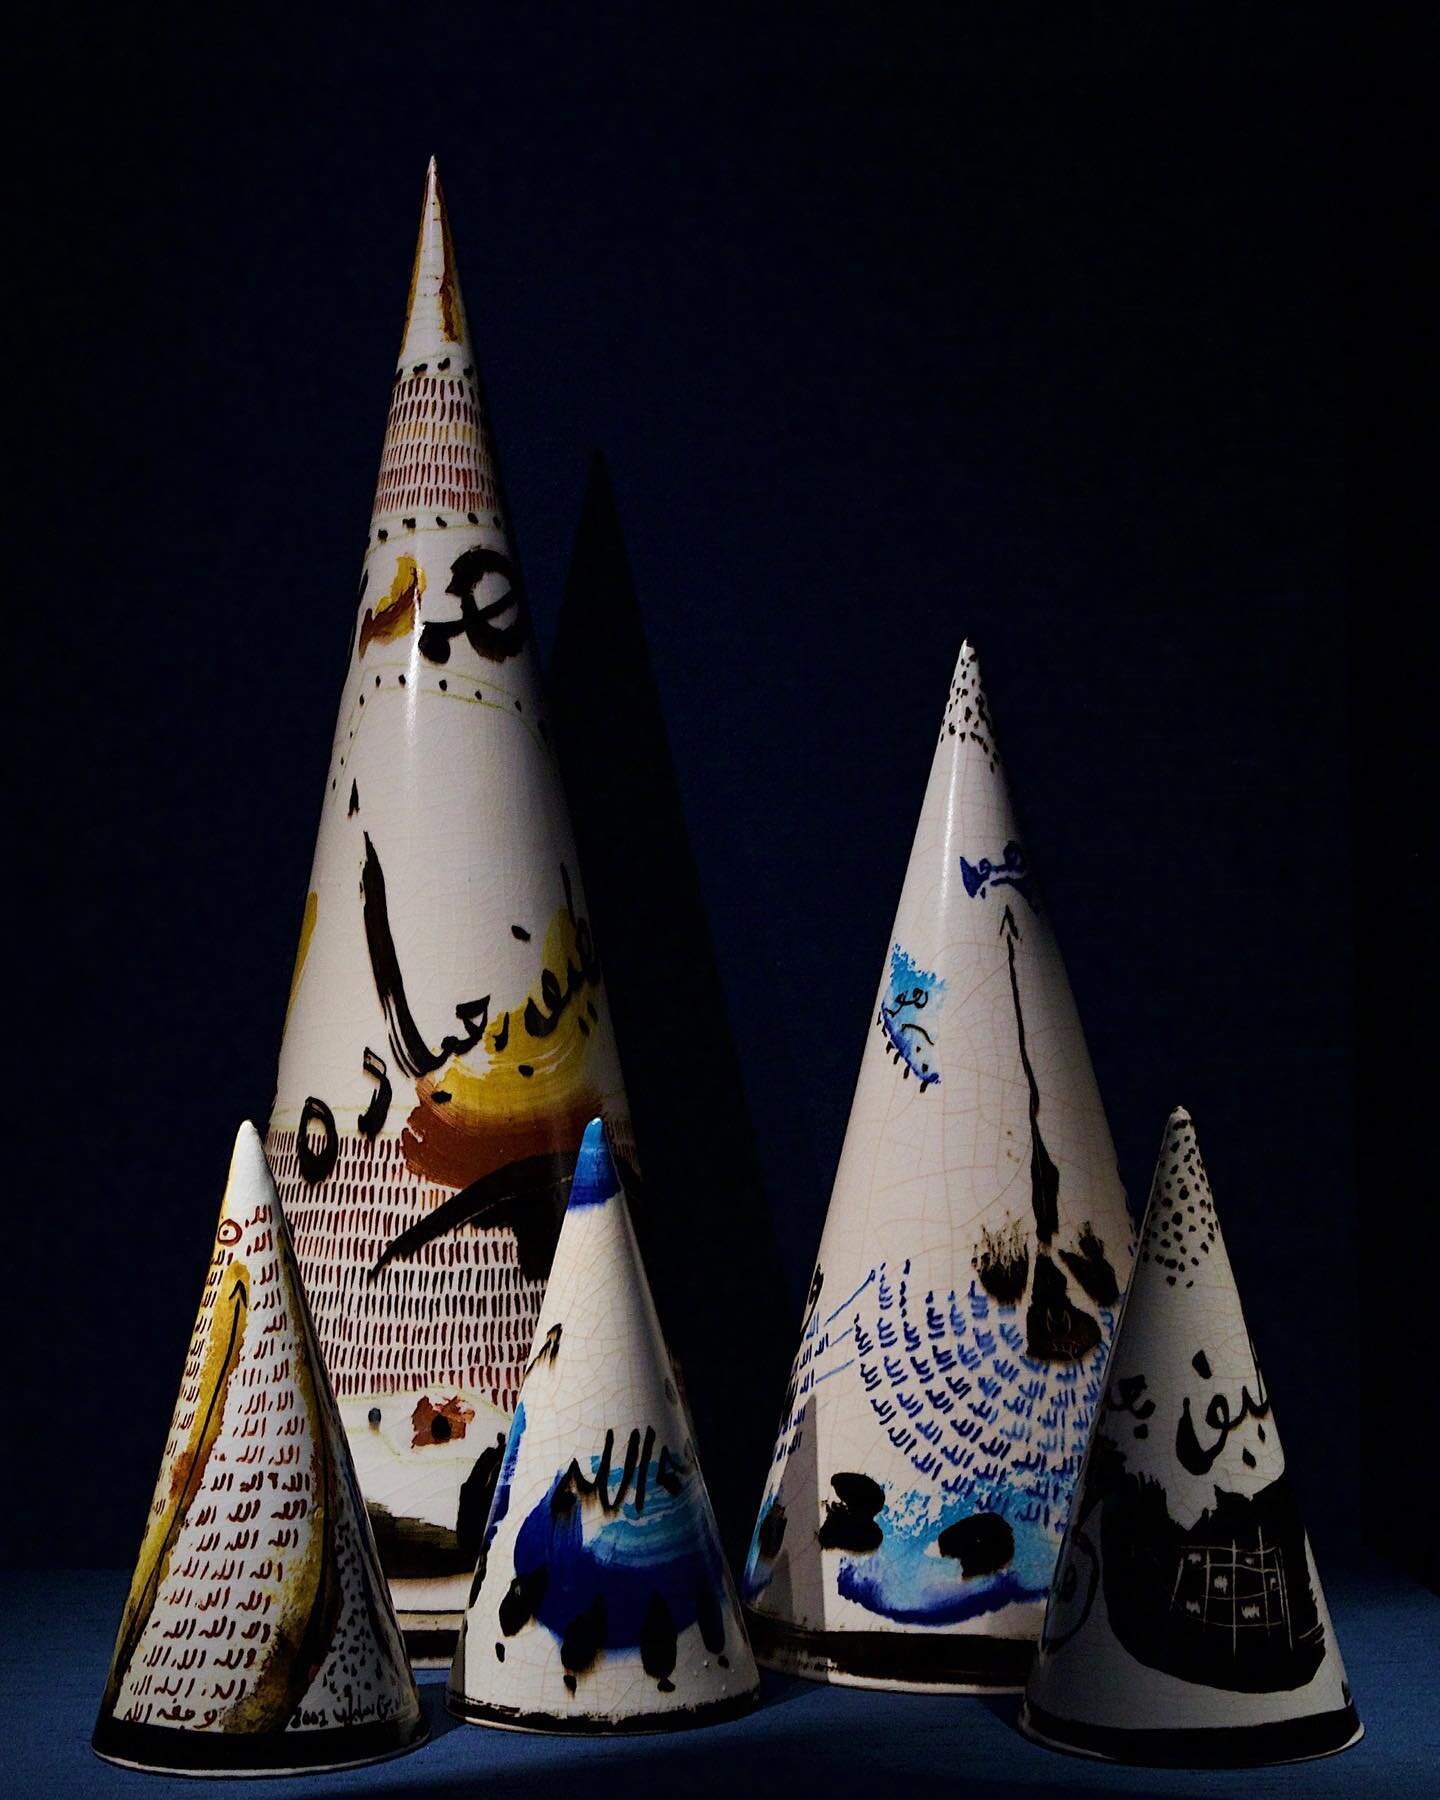 Ceramic Cones by Khaled Ben Slimane 
@khaled_ben_slimane 

📷 @stephblack_photo 
www.stephblackphoto.co.uk